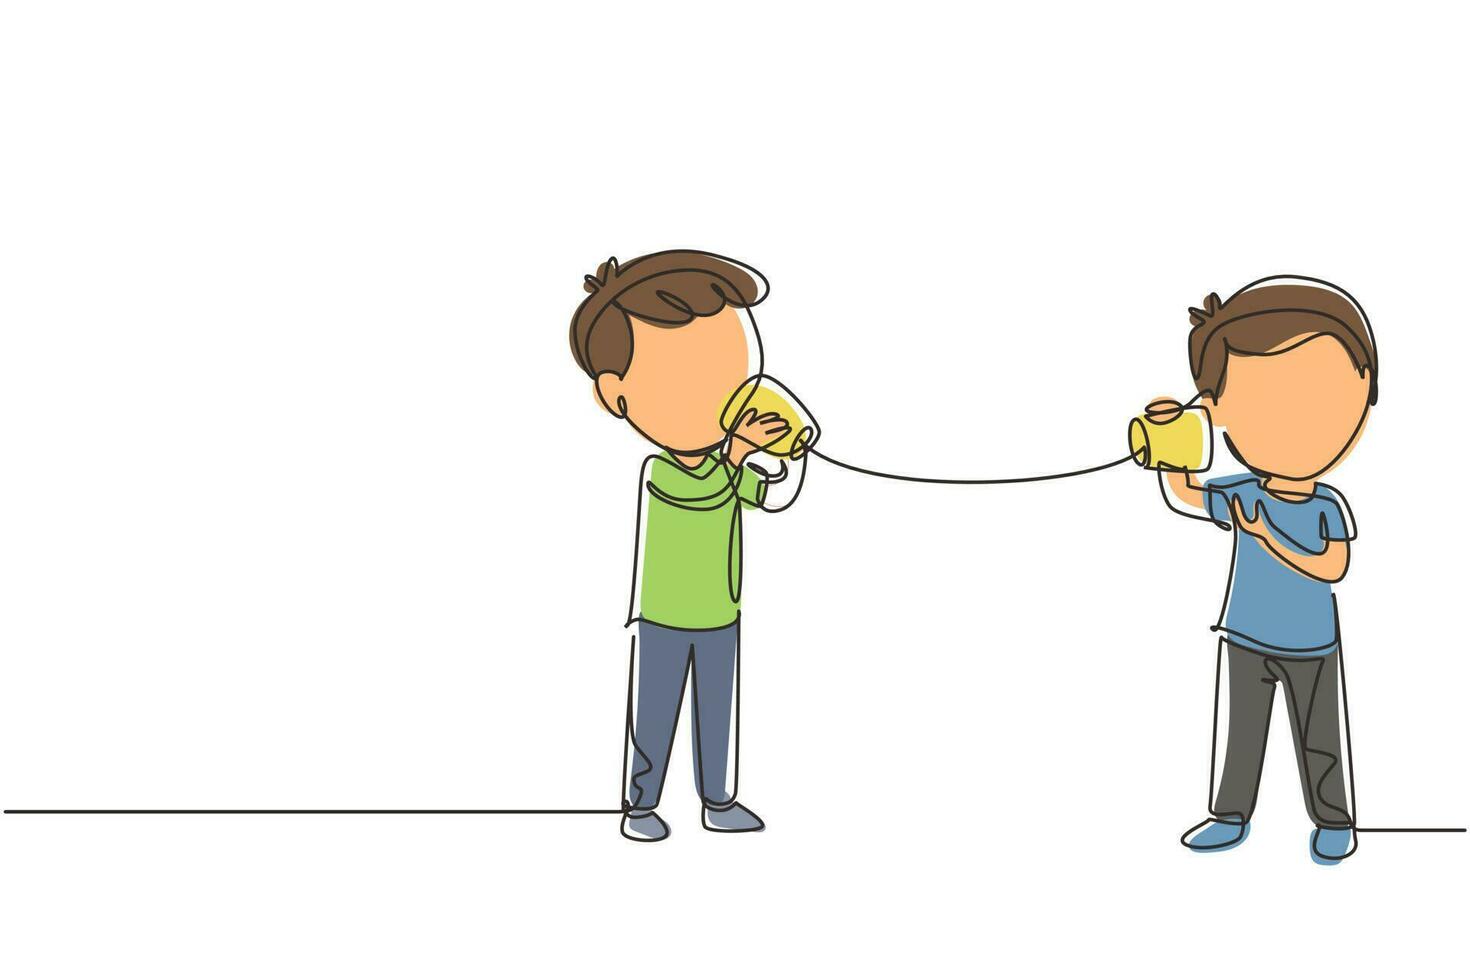 un solo dibujo de línea continua los niños pequeños hablan usando un teléfono de cuerda. niños comunicándose a través del teléfono con vasos de papel. niños jugando con teléfono de lata. ilustración de vector de diseño gráfico de dibujo de una línea